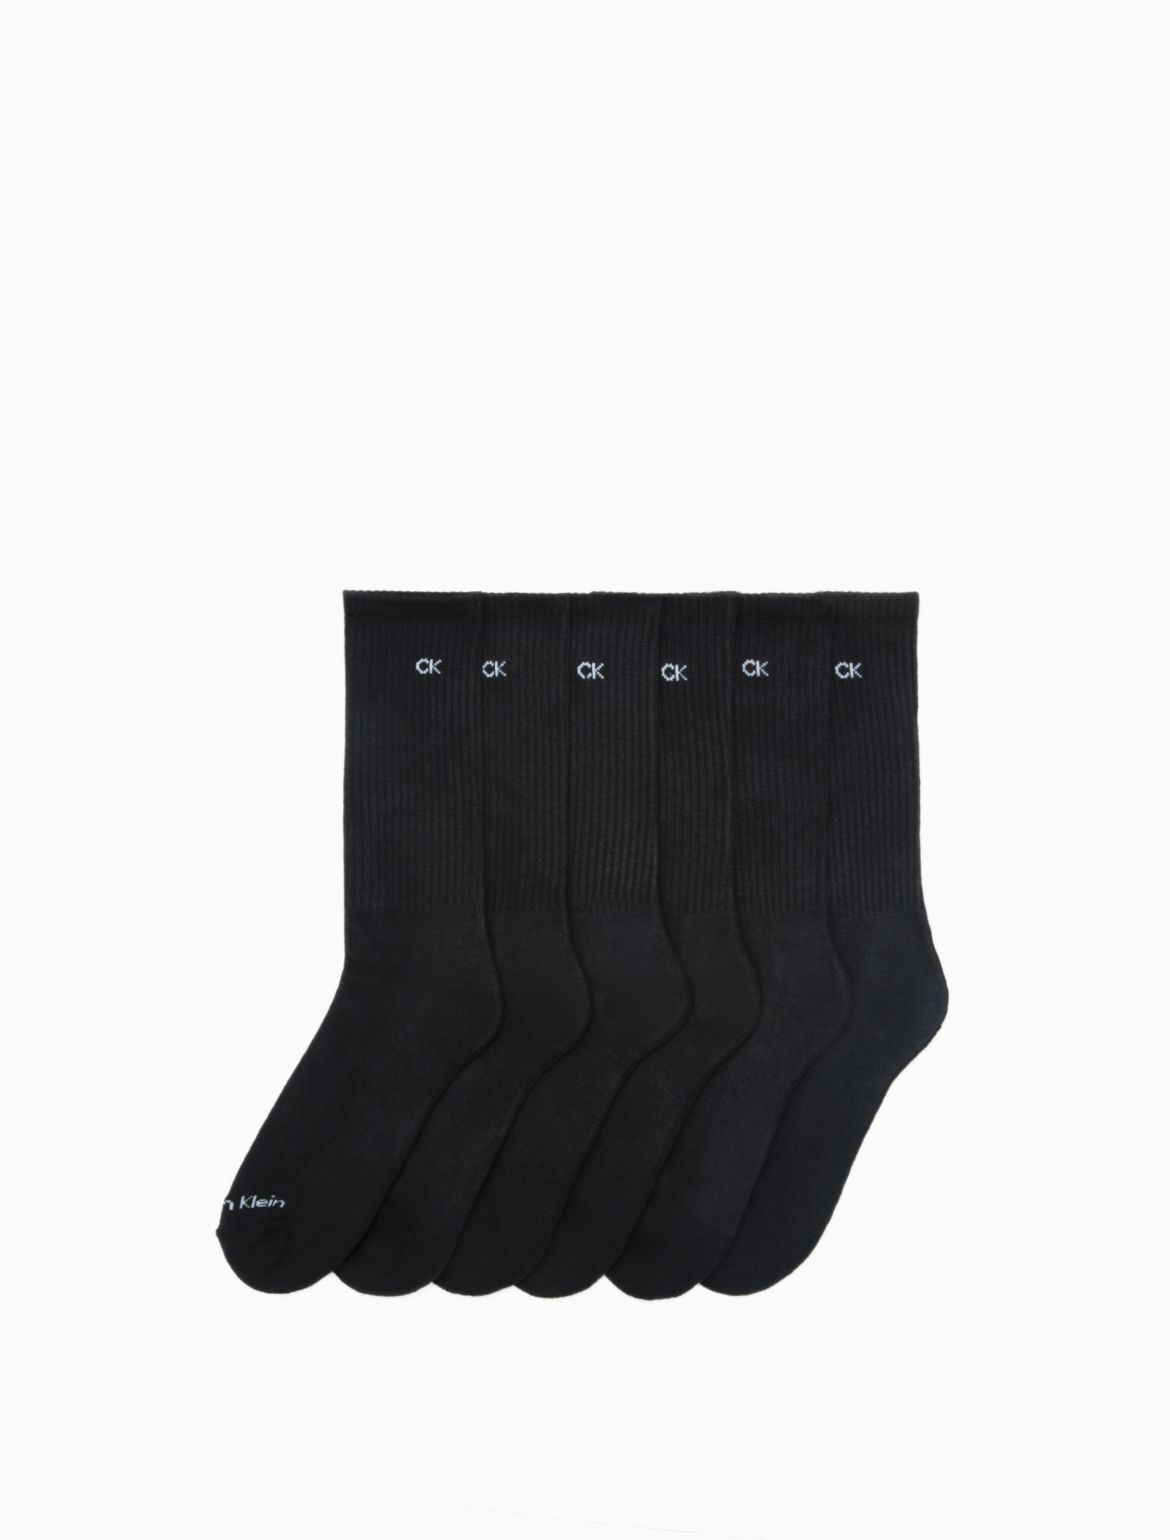 Calvin Klein Men's Cushion 6 Pack Crew Socks - Black